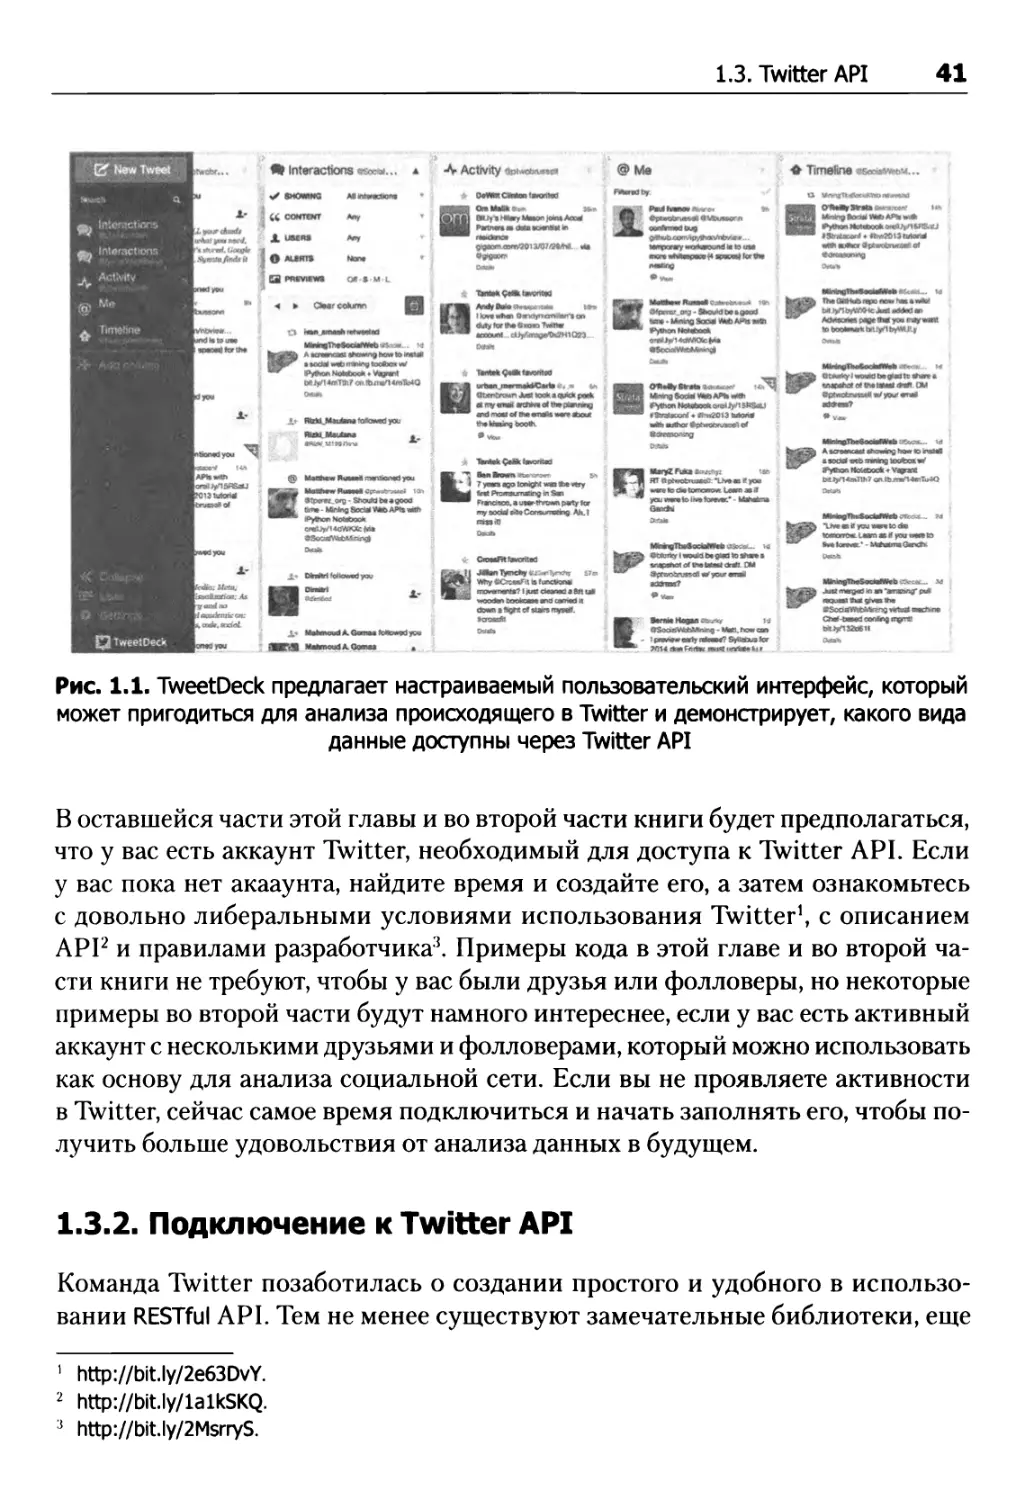 1.3.2. Подключение к Twitter API